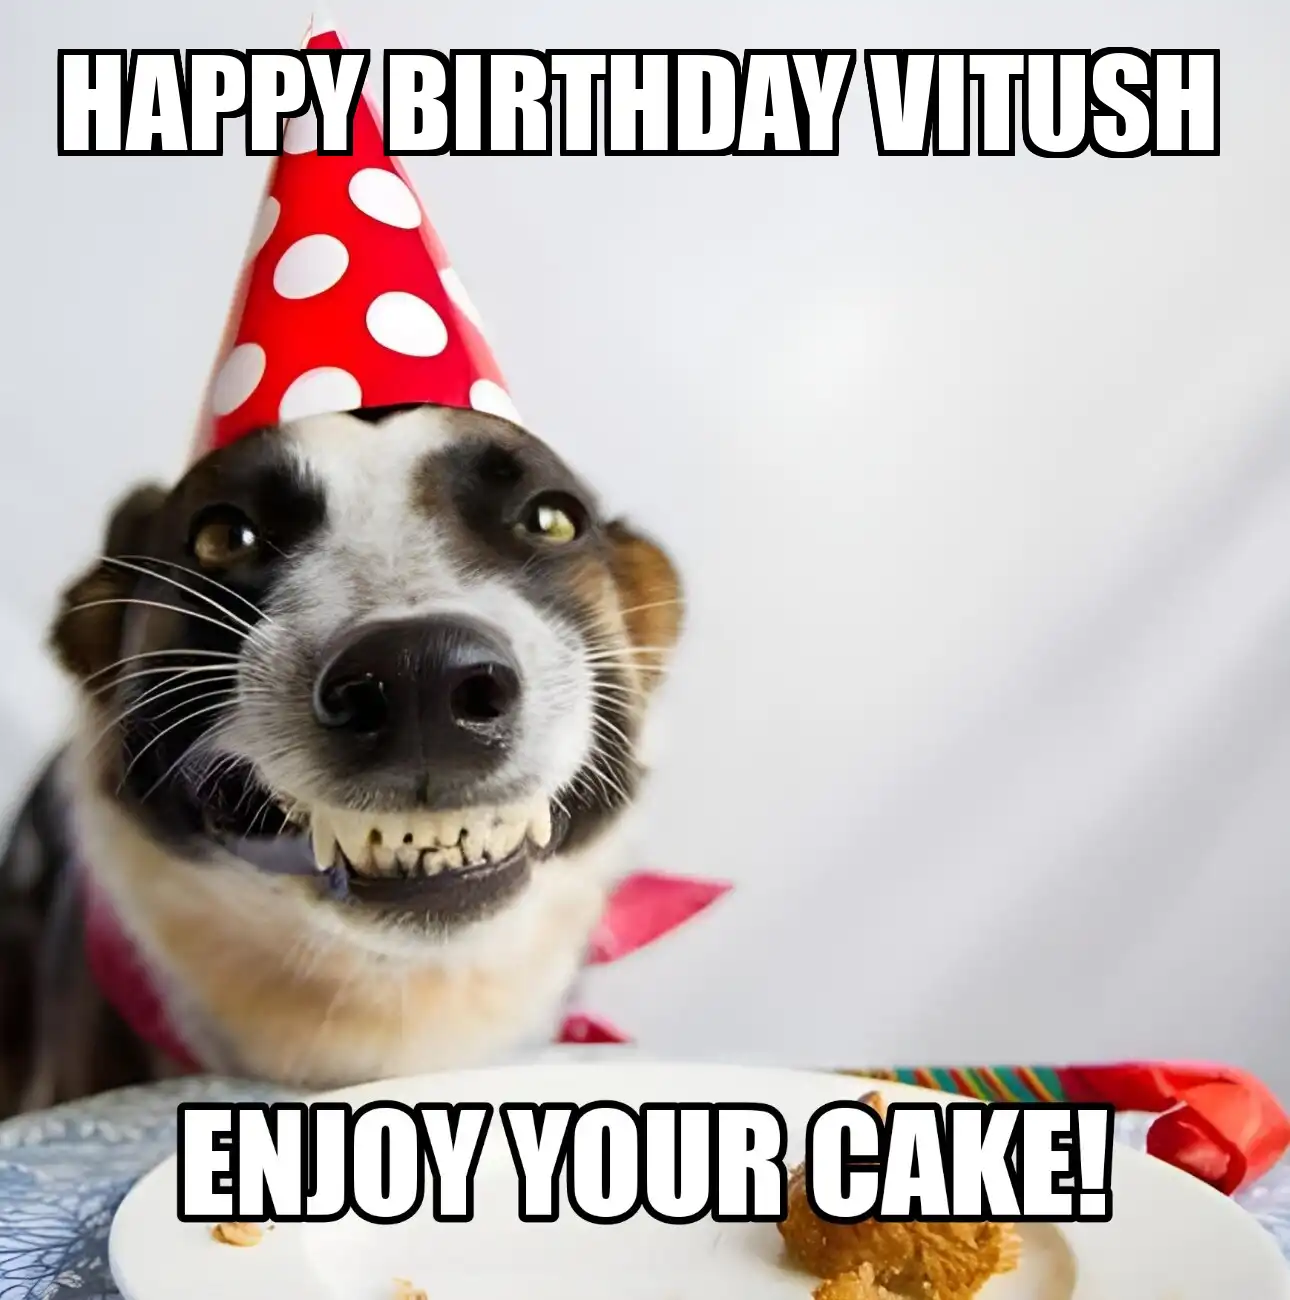 Happy Birthday Vitush Enjoy Your Cake Dog Meme